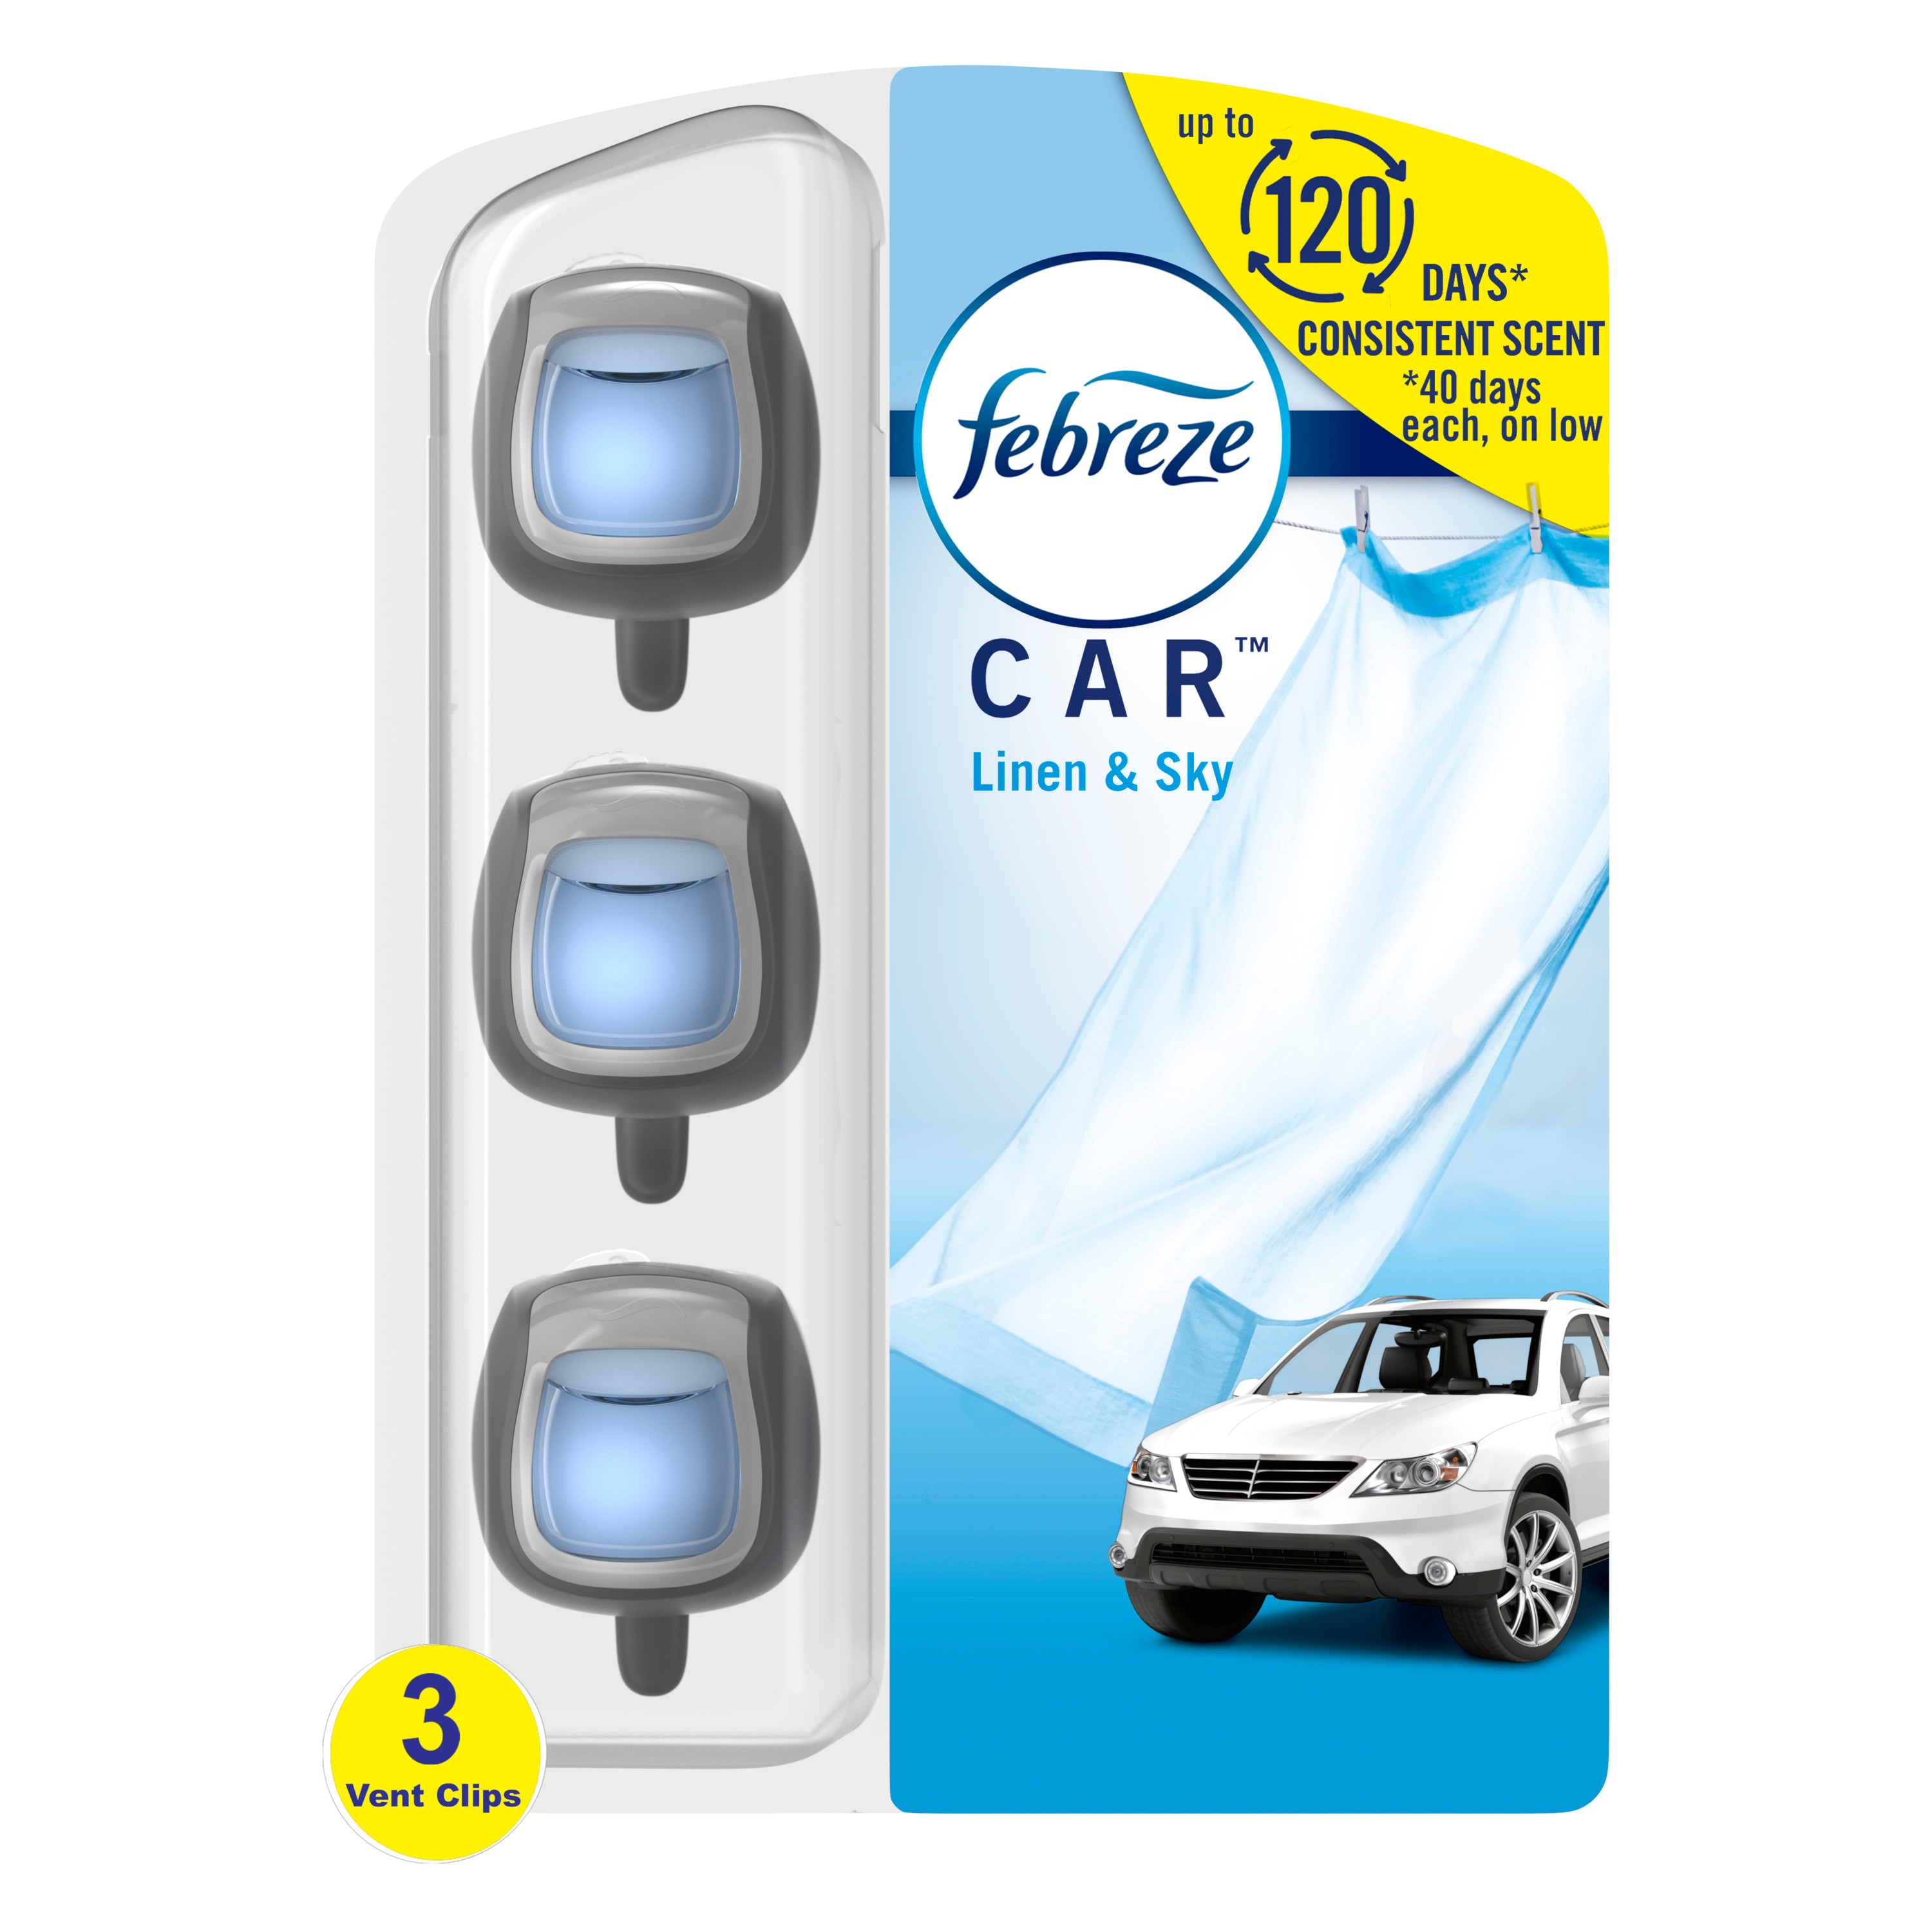 Car Fresheners Air Freshener, Car Freshener, Vent Mounted Car Air